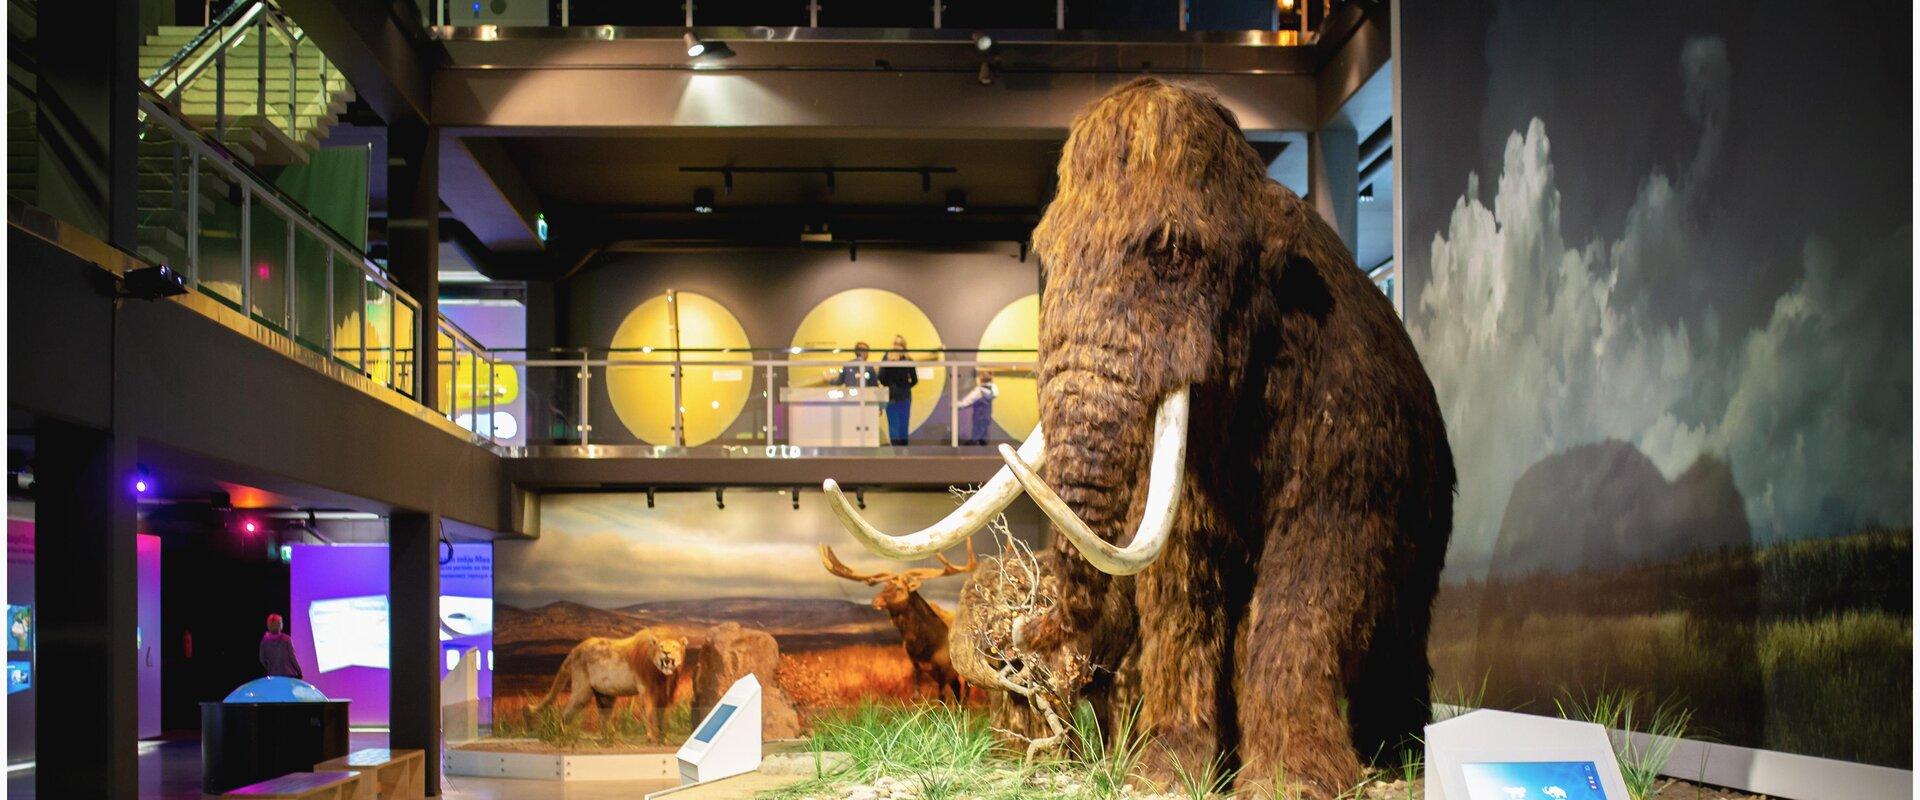 Jääaja Keskus on põnev elamuskeskus, mis räägib elust pärast viimast jääaega. Kaasahaarava keskuse sümboliks on 10 000 aastat tagasi elanud mammutid. 